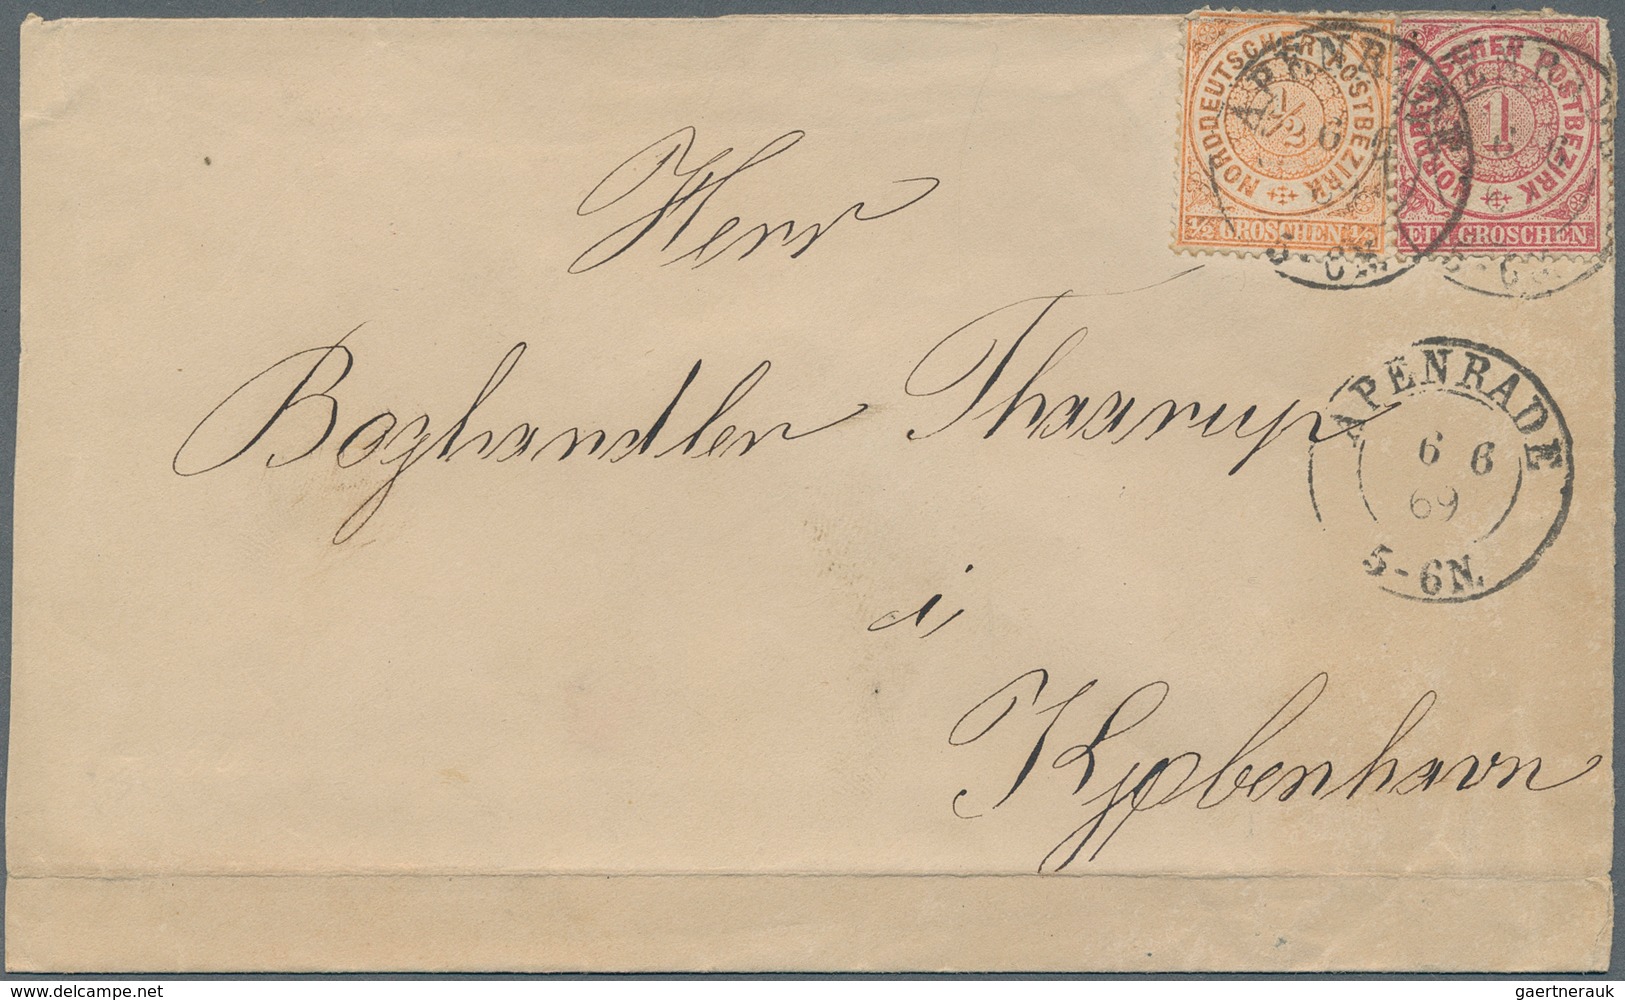 Norddeutscher Bund - Marken und Briefe: 1868/1871 (ca.), vielseitiger Posten von rund 150 Briefen, m